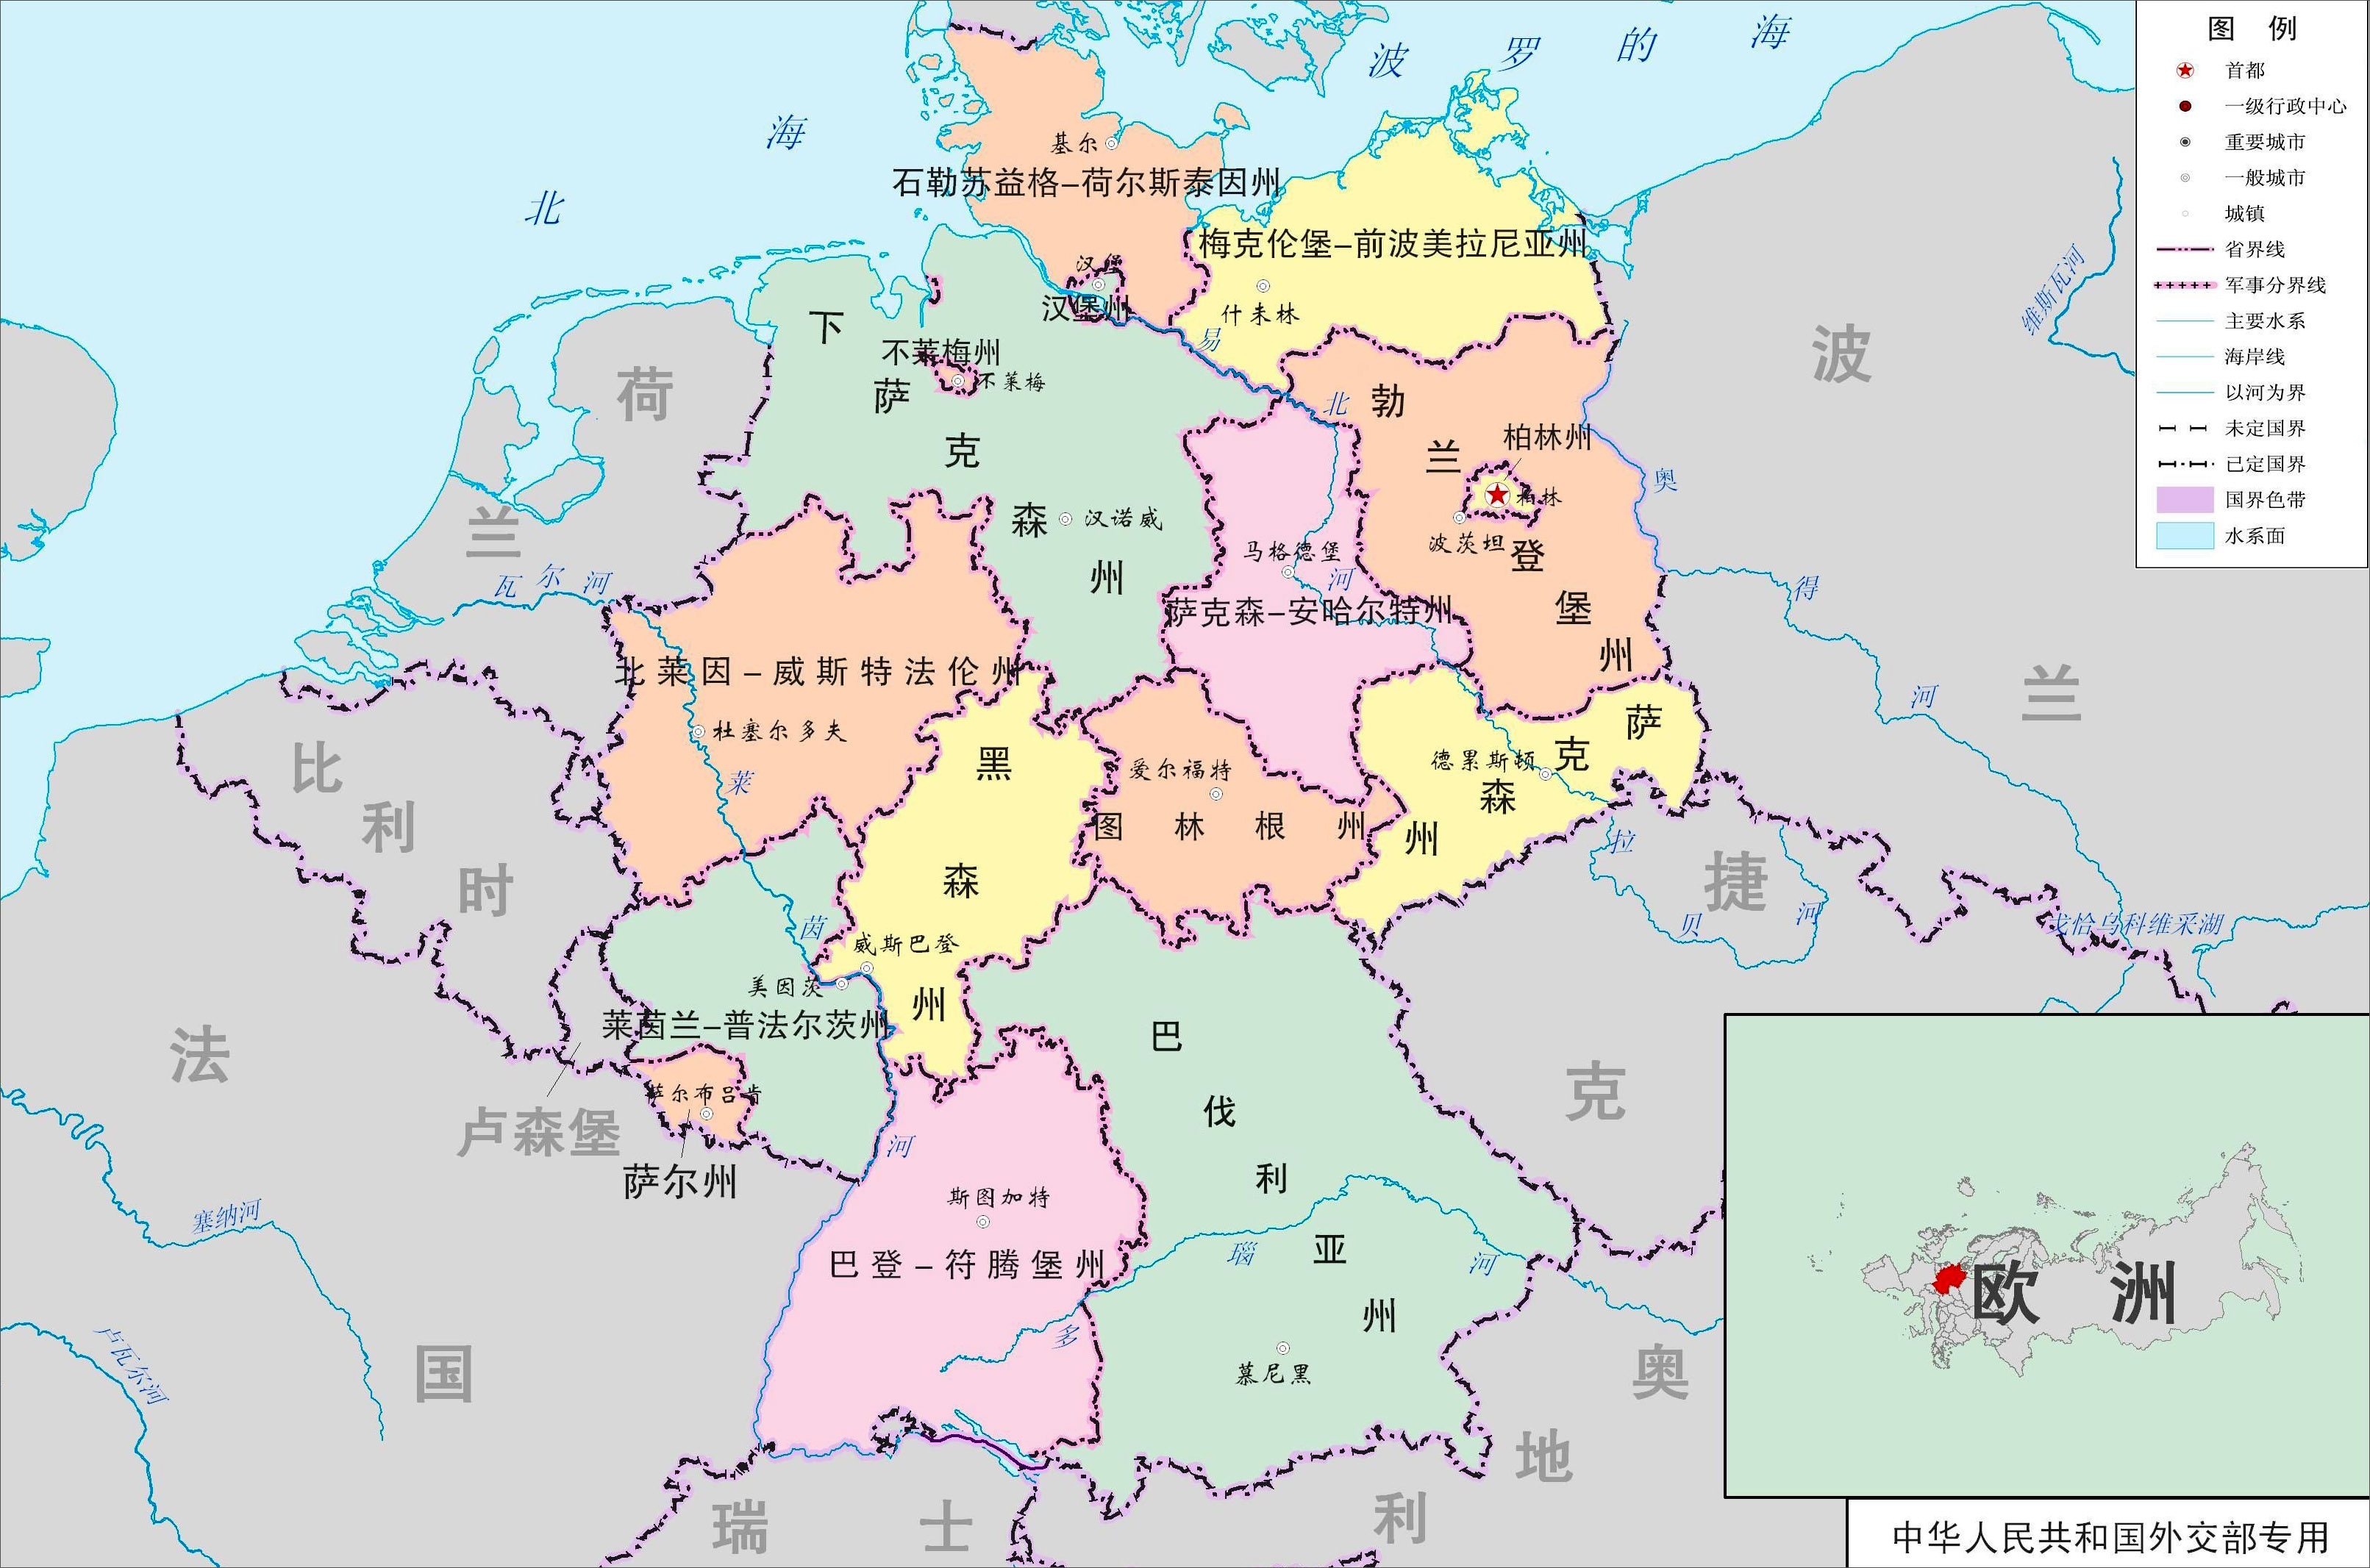 德国人口密度每平方公里23044人欧洲人口第一大国是俄罗斯